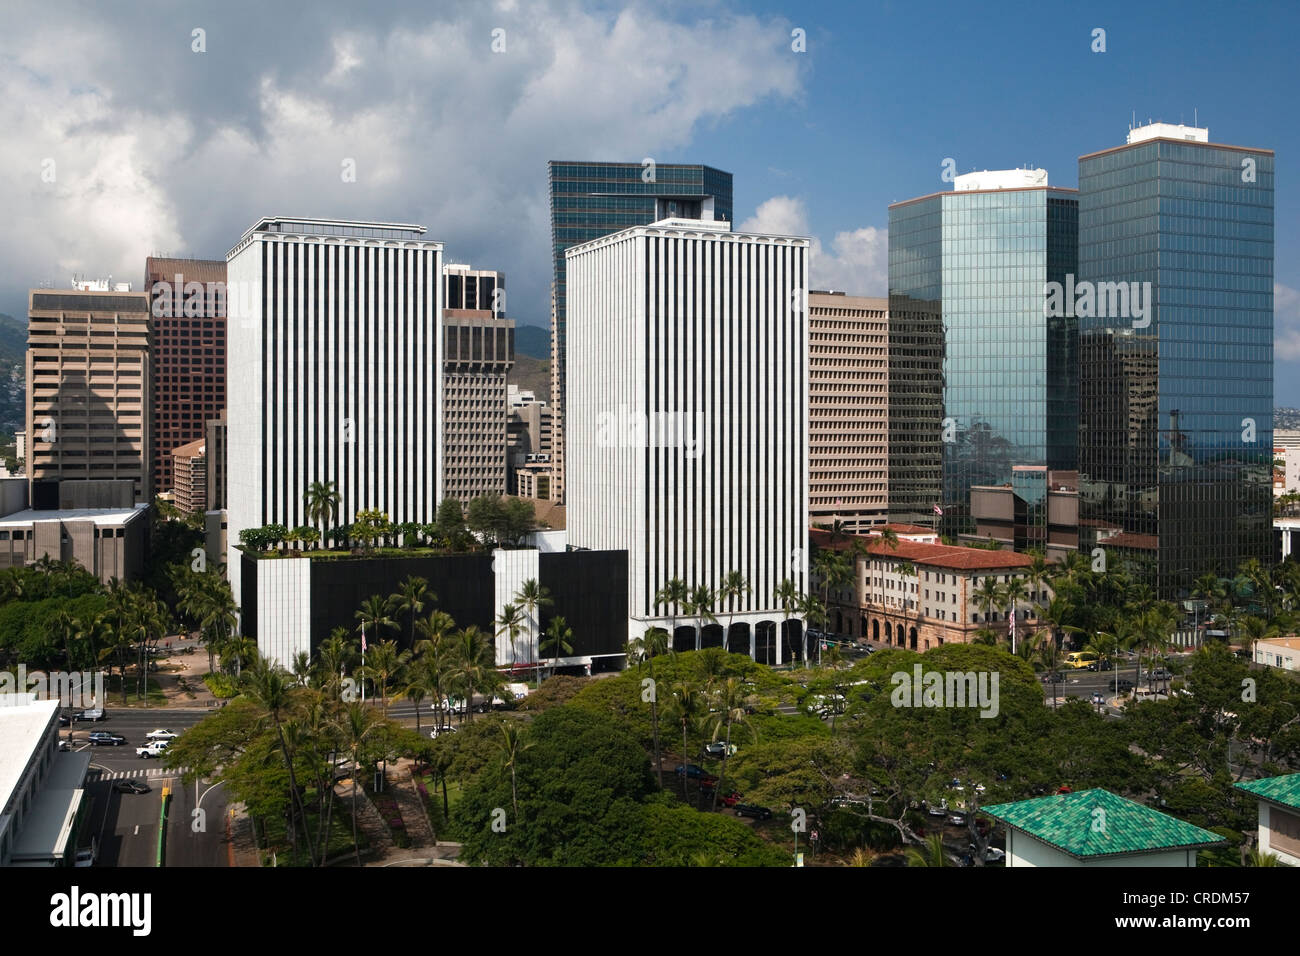 Vista dall'Aloha Tower ai grattacieli del quartiere degli affari, Honolulu, Hawai'i, STATI UNITI D'AMERICA Foto Stock